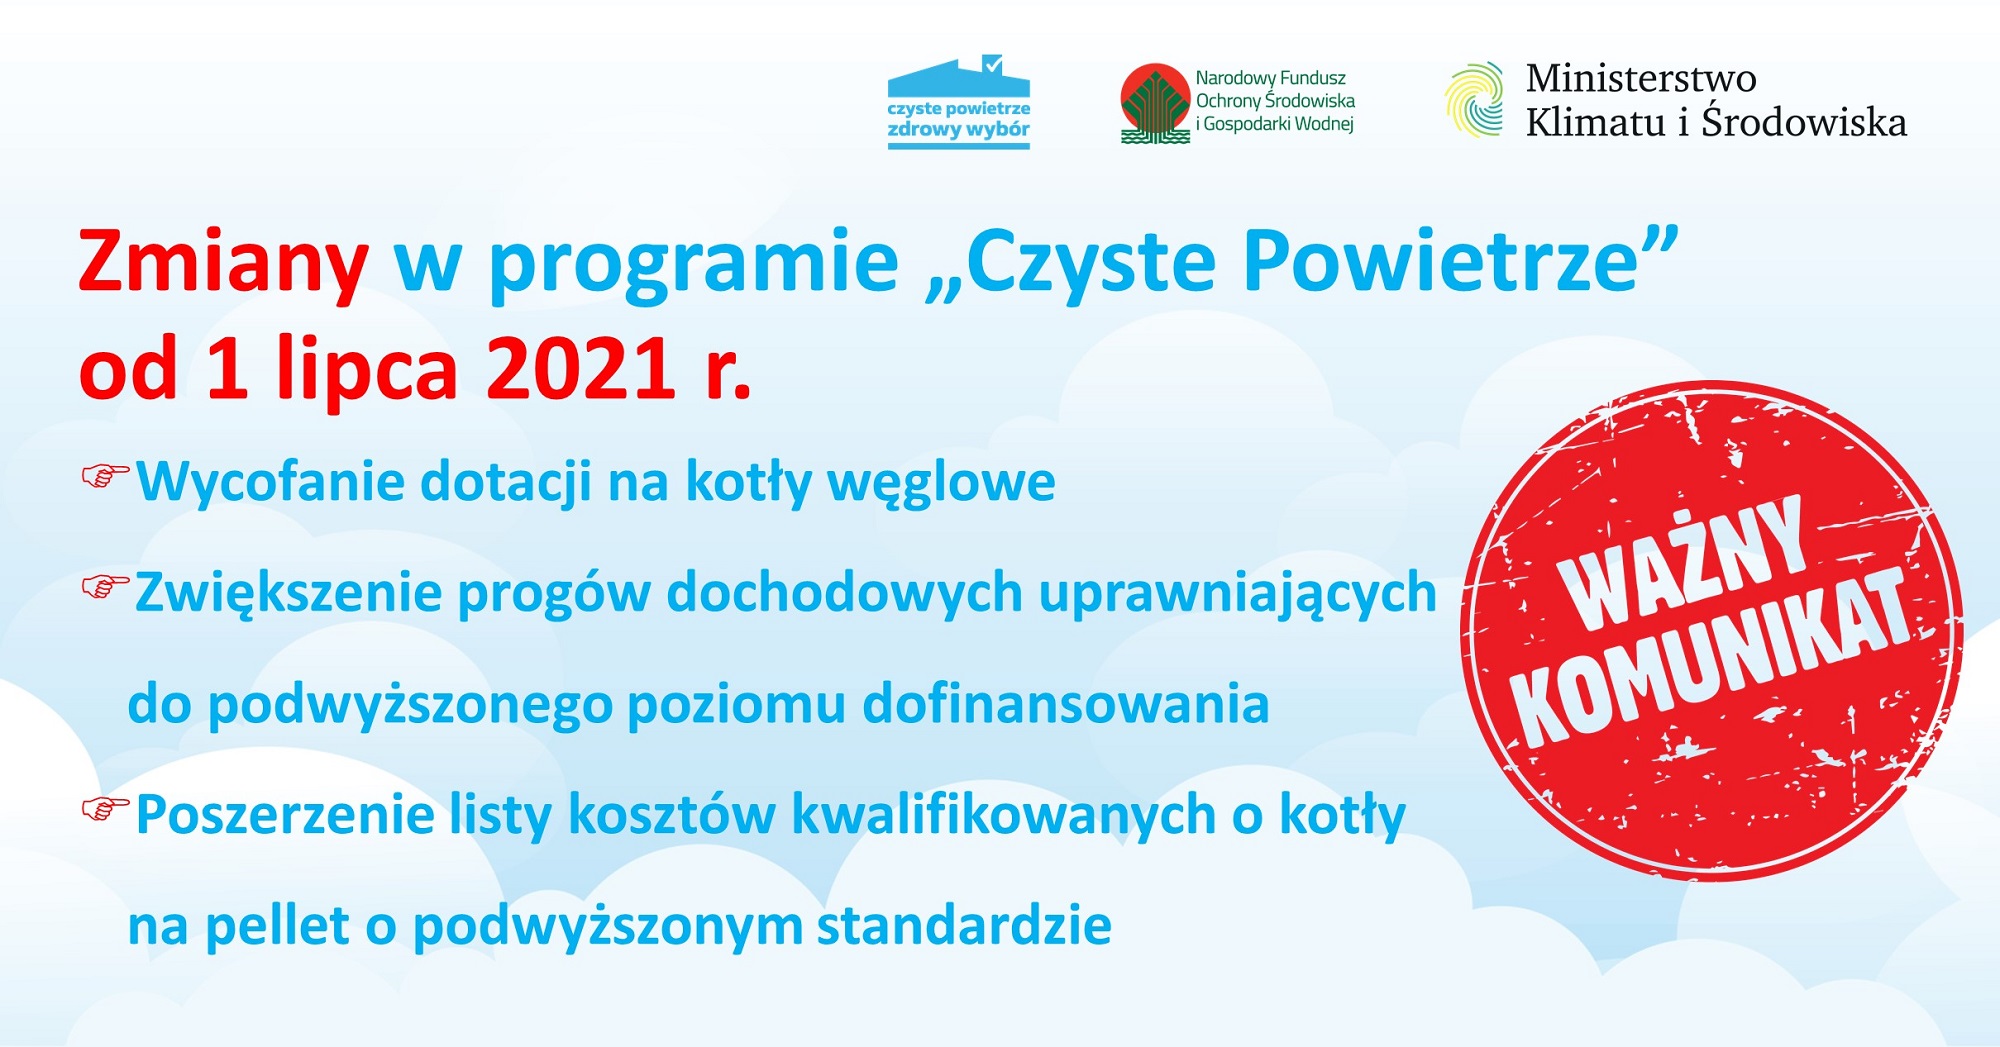 Zmiany w programie "Czyste Powietrze" od 1 lipca 2021 r.